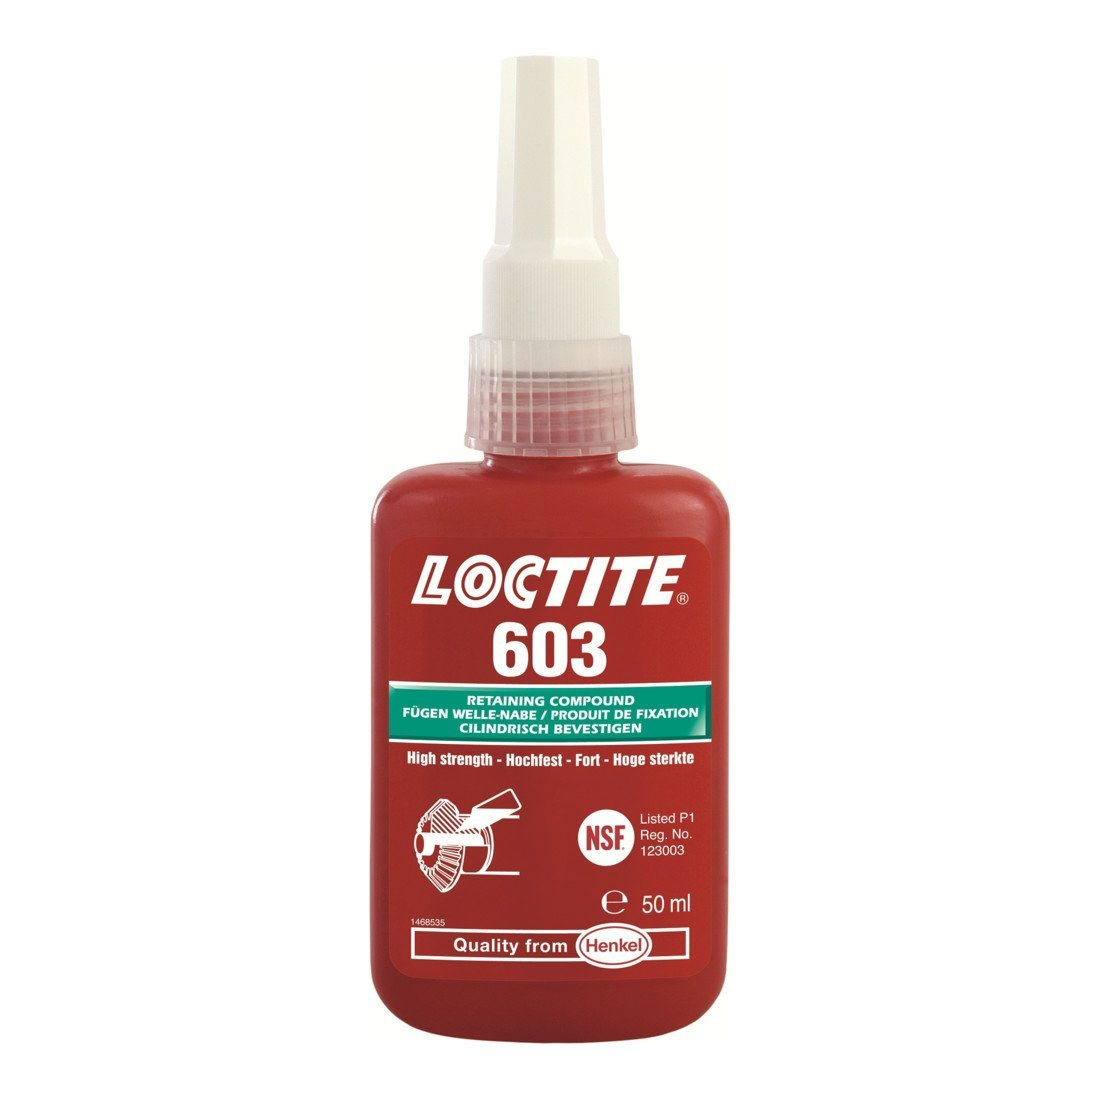 Loctite 603 Fügeklebstoff, 50 ml